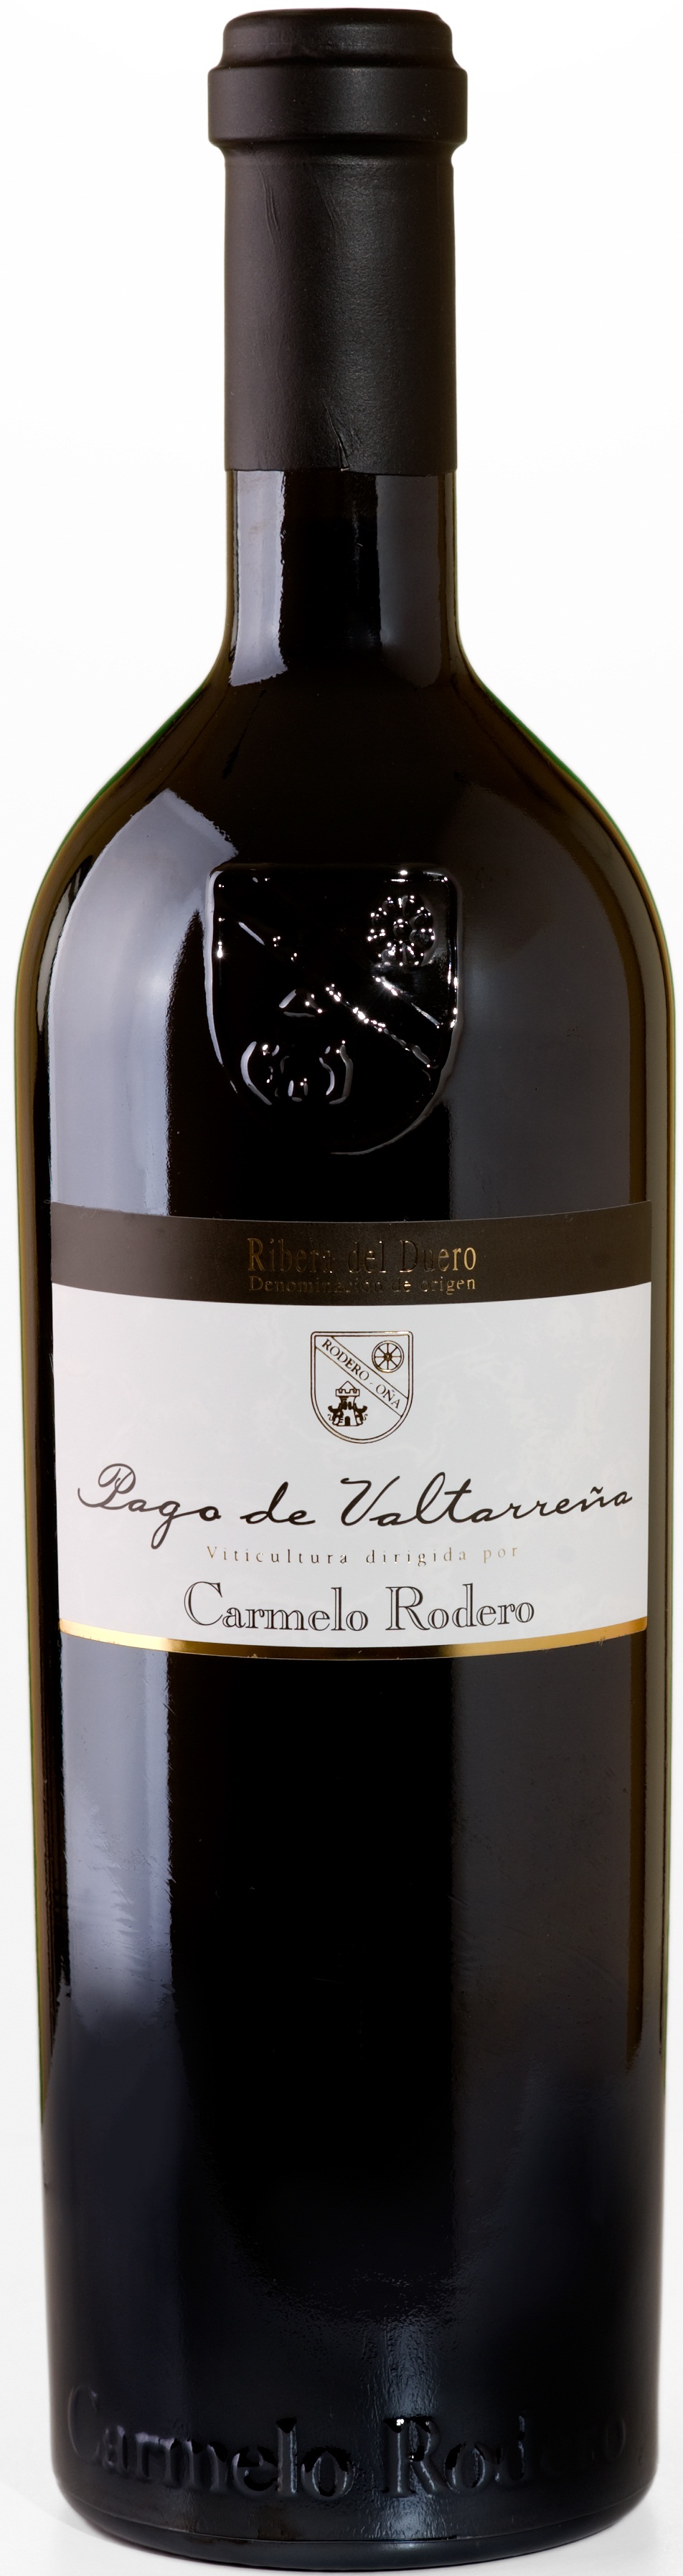 Logo del vino Carmelo Rodero Pago de Valtarreña